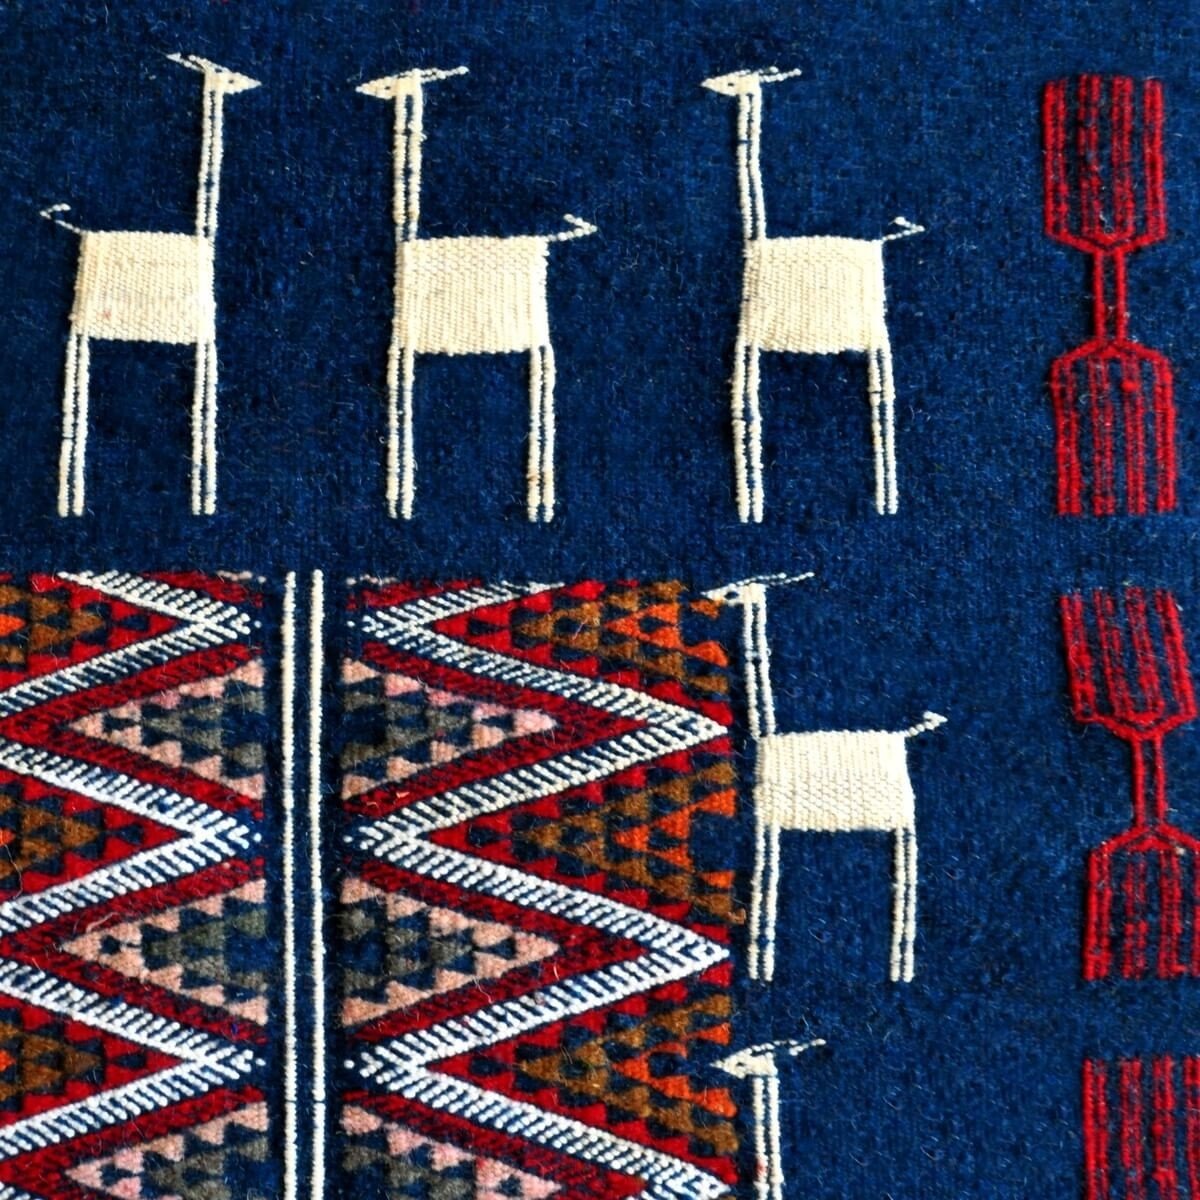 Berber Teppich Teppich Kelim Ichbilia 60x115 Blau/Weiß/Rot (Handgewebt, Wolle) Tunesischer Kelim-Teppich im marokkanischen Stil.